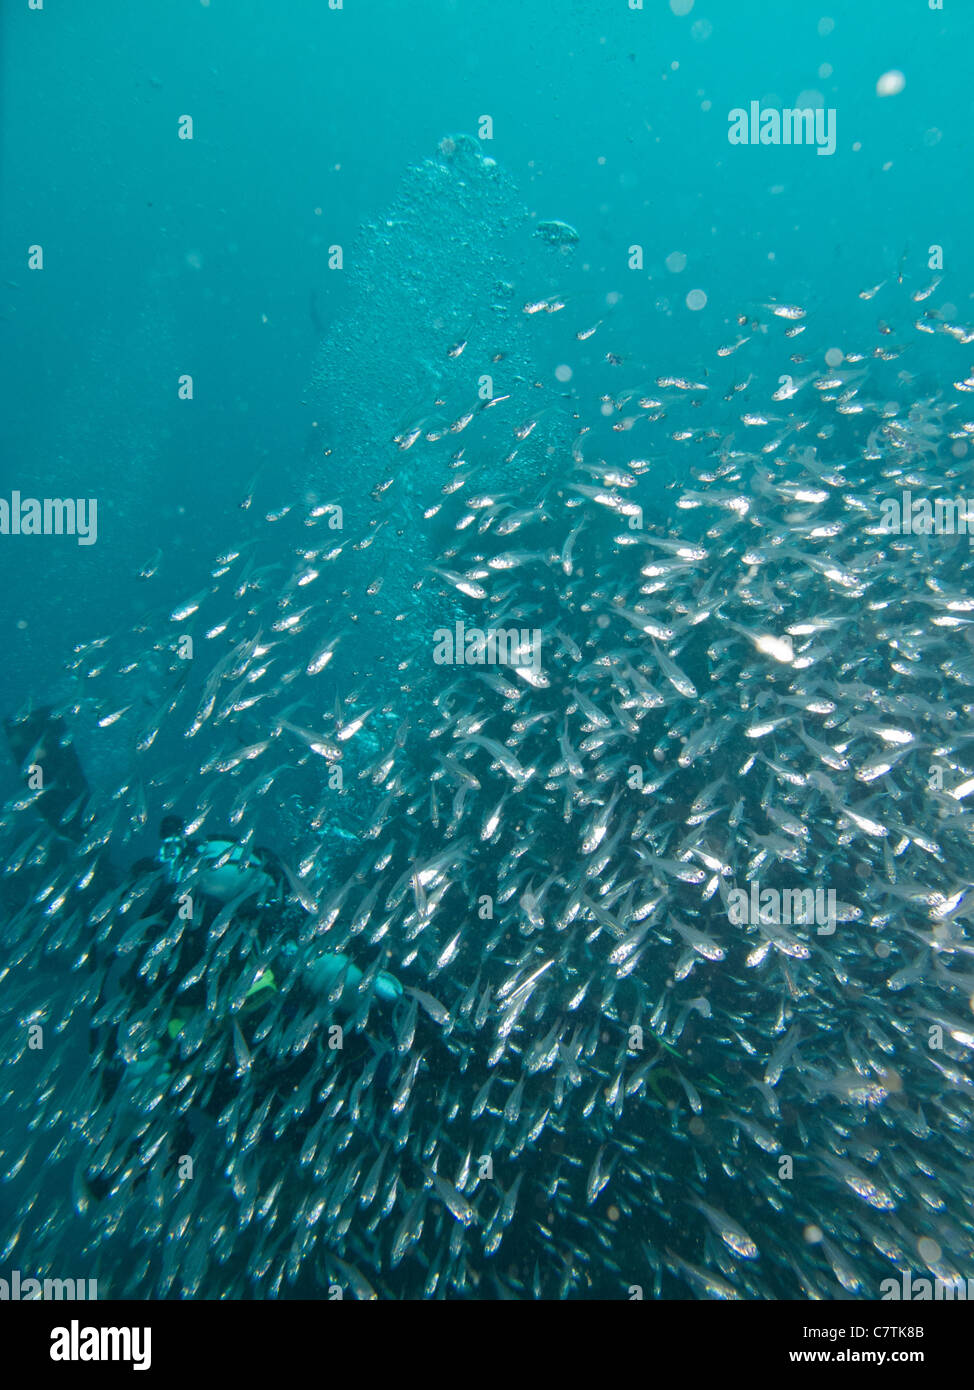 Escuela de pequeños peces la conformación de diferentes formas bajo el agua Foto de stock